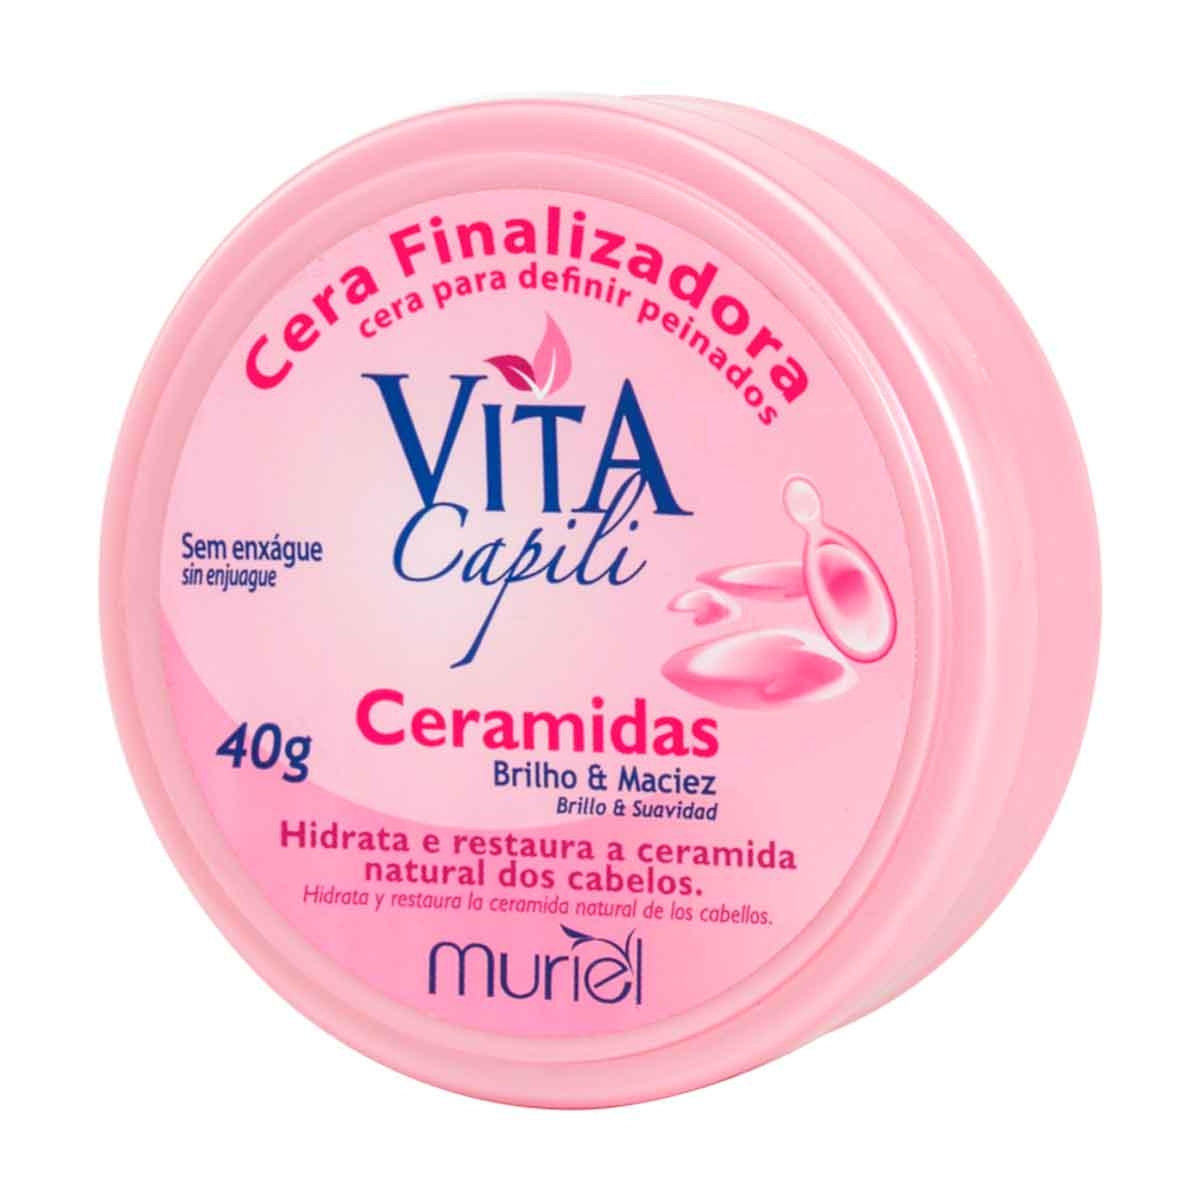 Cera Finalizadora Capilar Vita Capili Ceramidas com 40g Muriel 40g